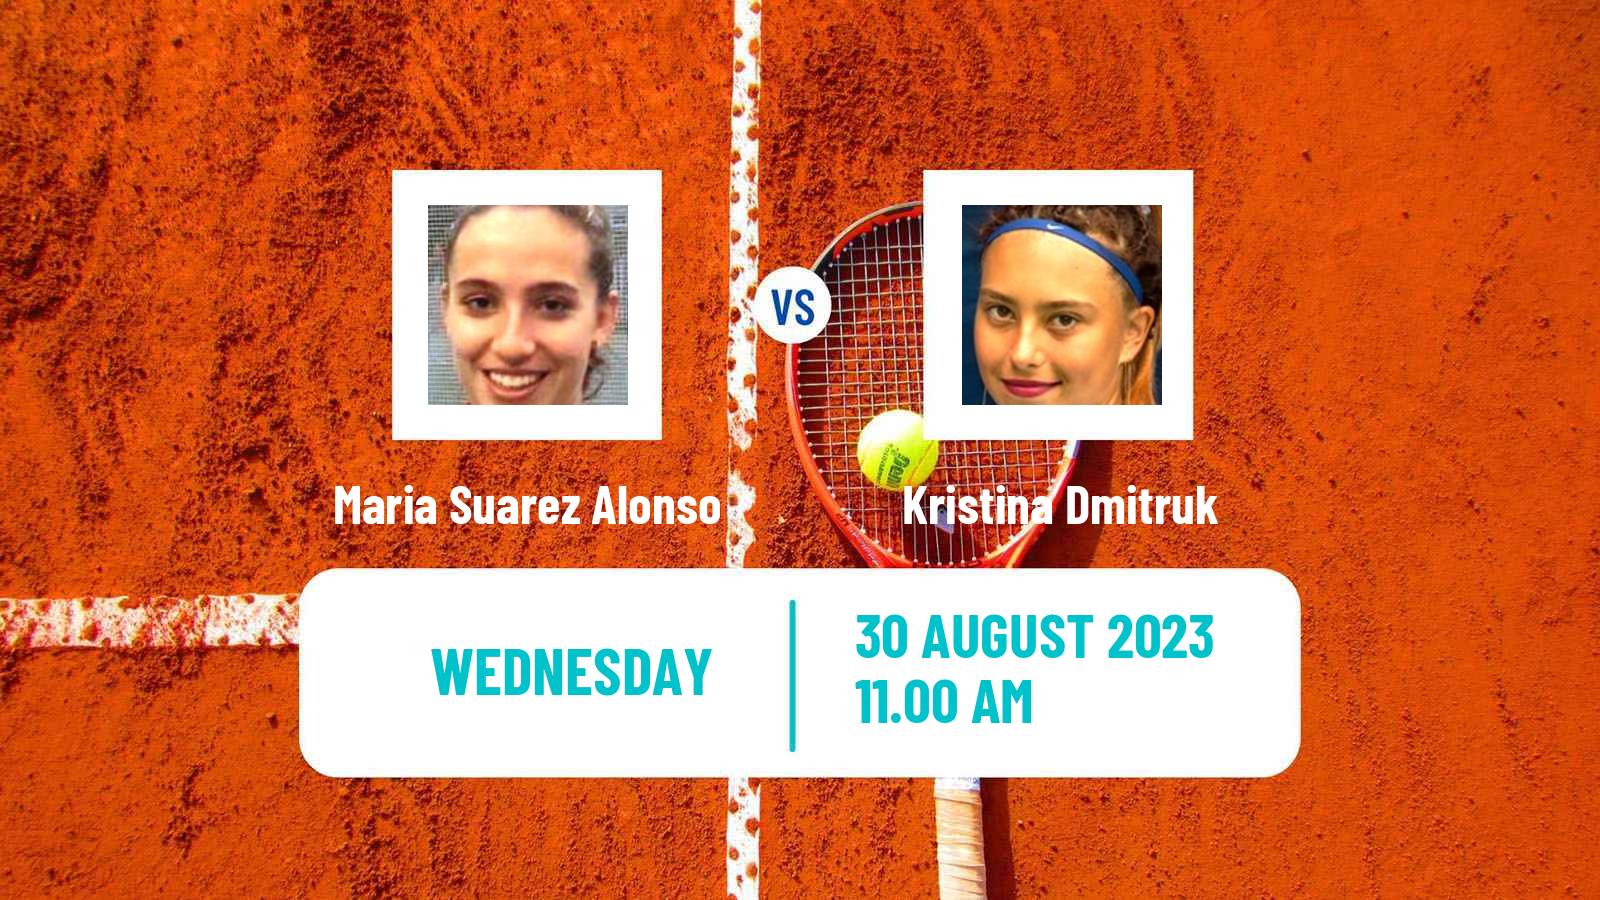 Tennis ITF W25 Valladolid Women Maria Suarez Alonso - Kristina Dmitruk